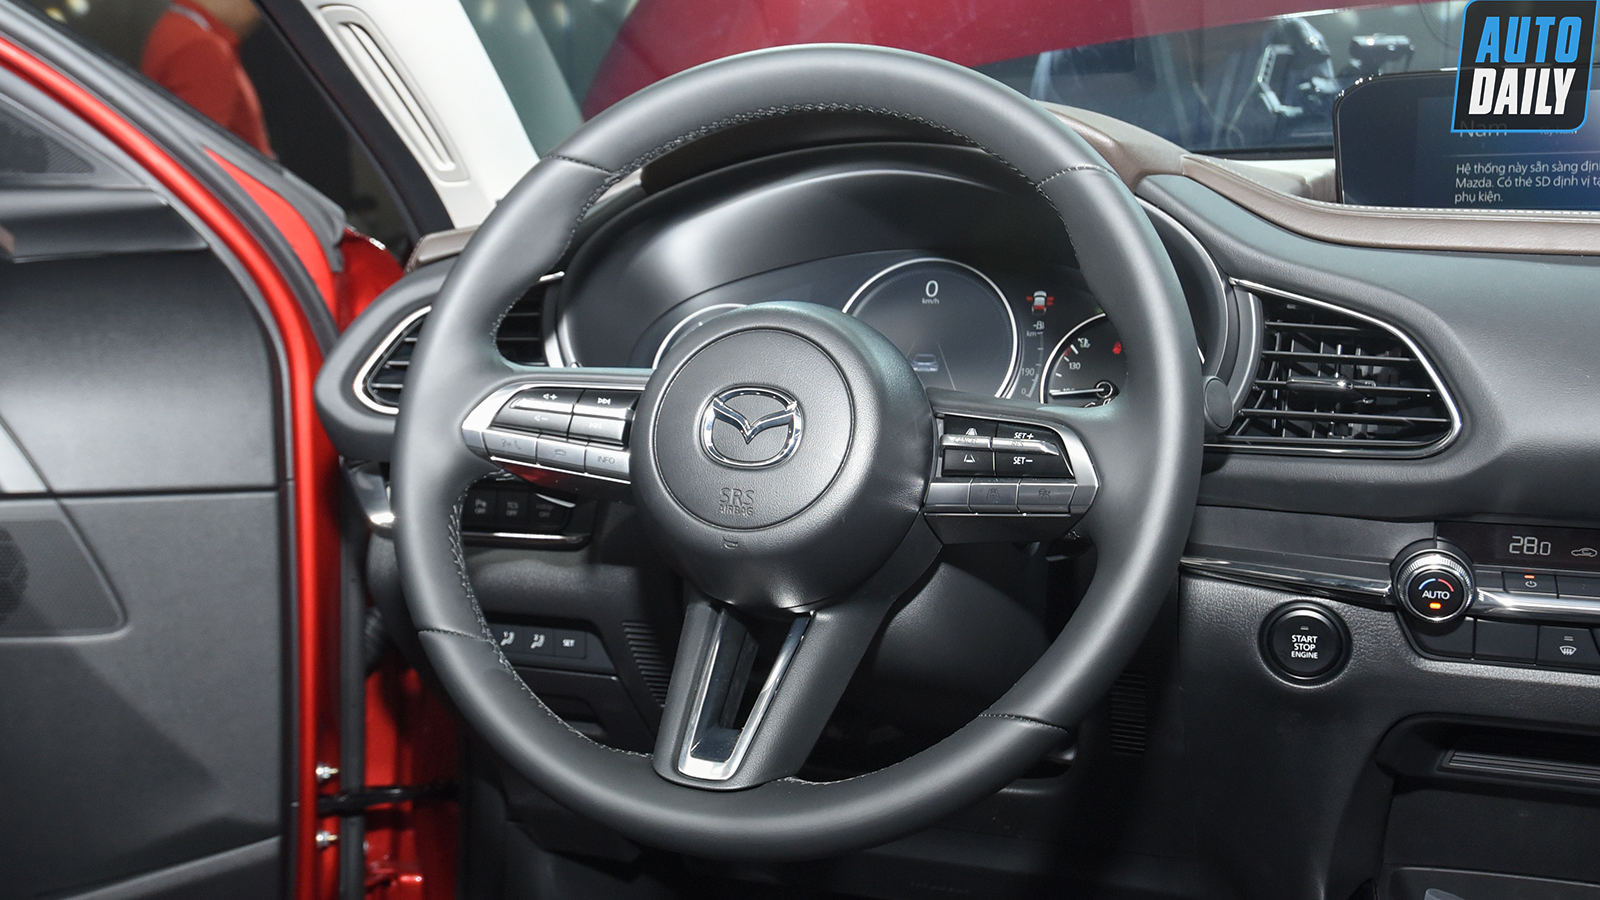 Hình ảnh chi tiết 2 phiên bản Mazda CX-30 vừa ra mắt tại Việt Nam adt-9855-copy.jpg